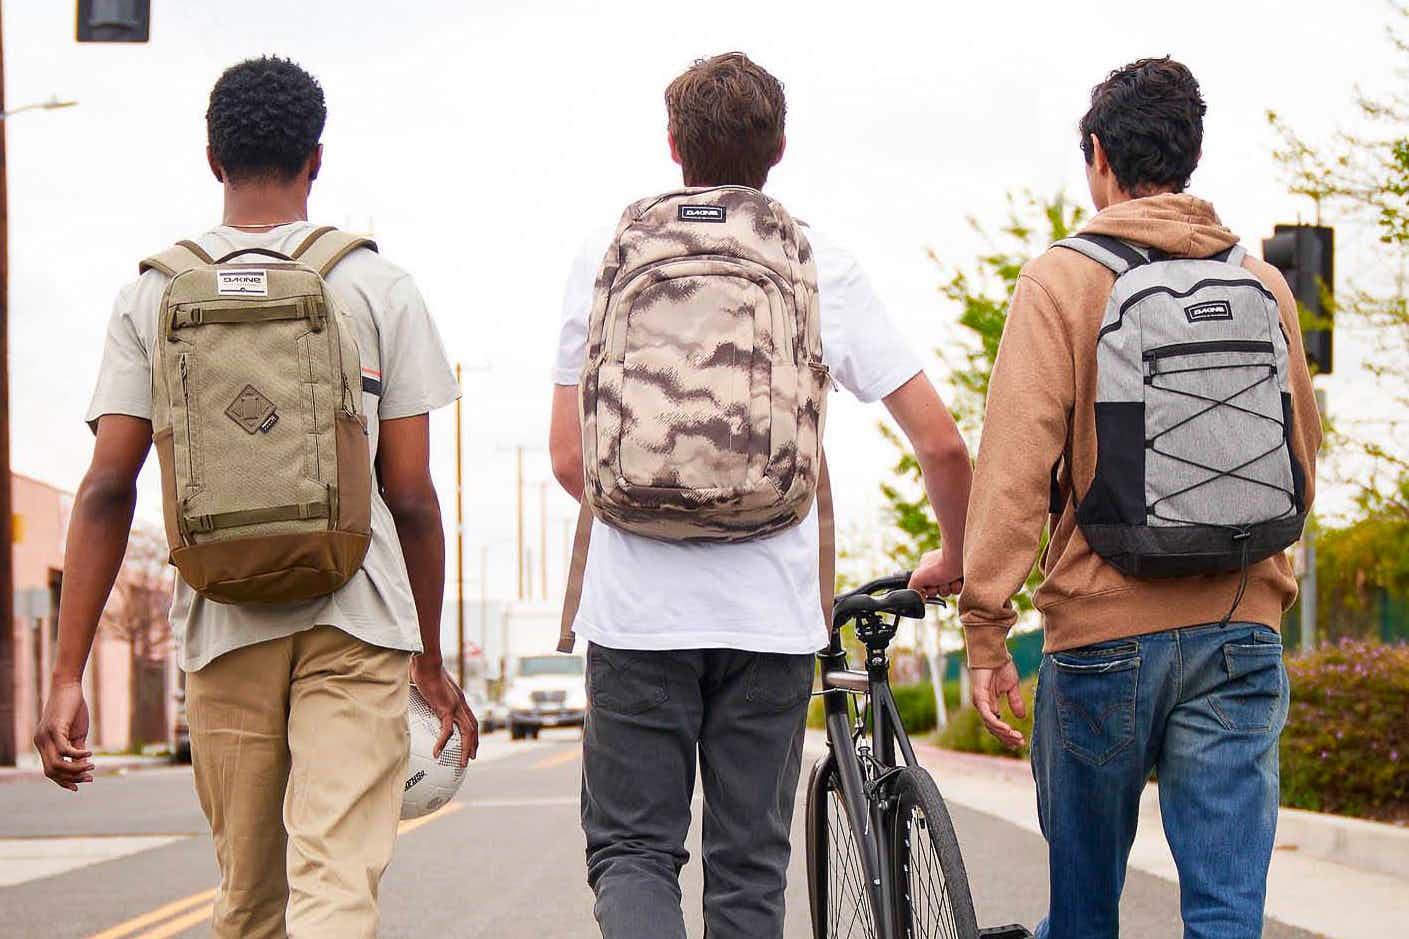 Three kids wearing Dakine backpacks walking together down a street, one of them pushing a bike.